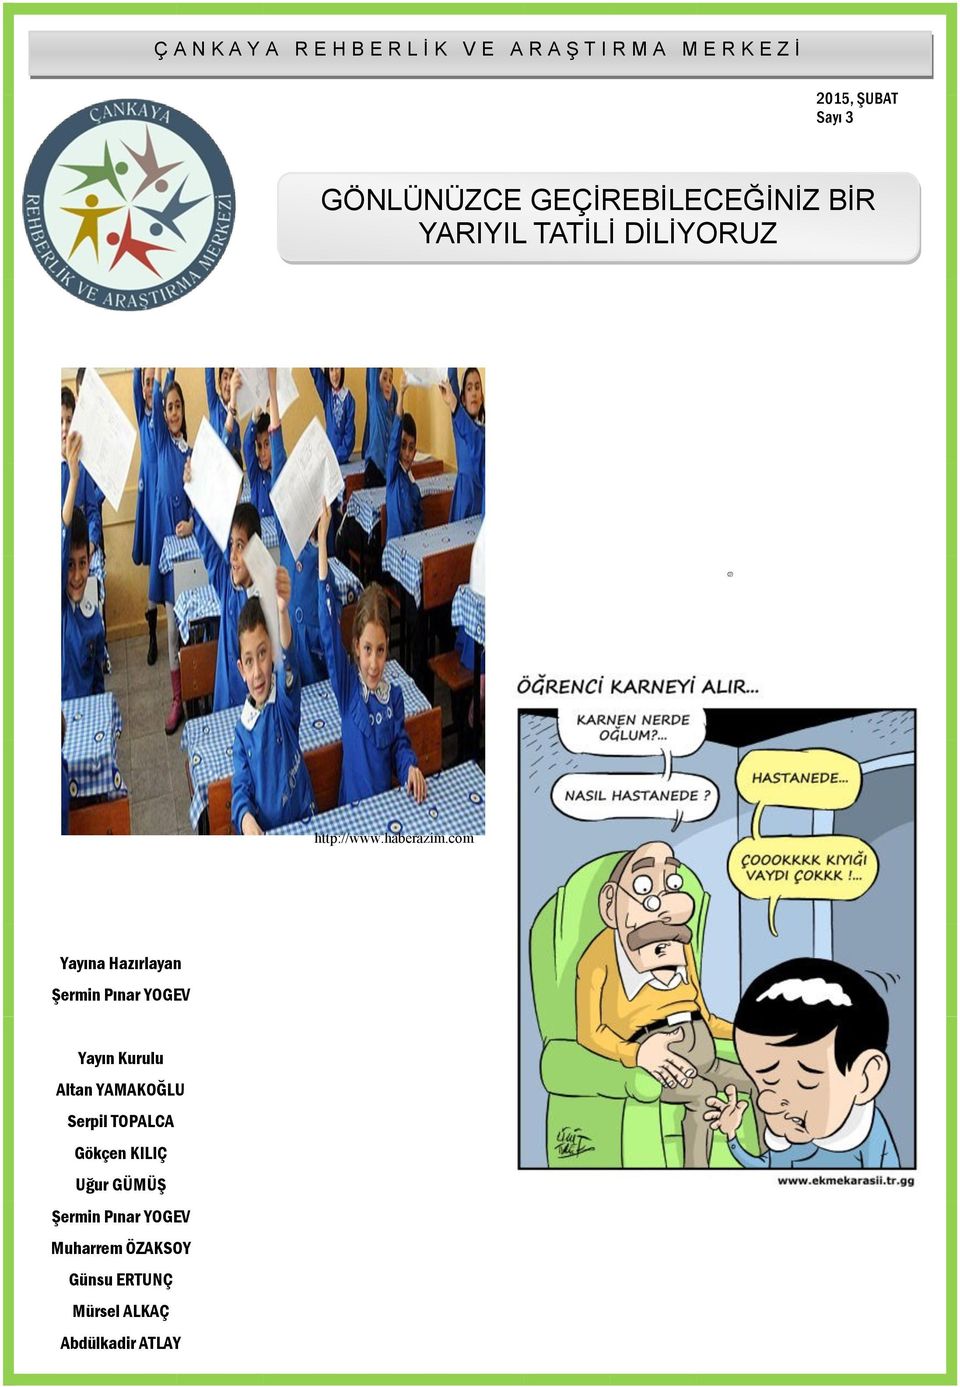 com Yayına Hazırlayan Şermin Pınar YOGEV Yayın Kurulu Altan YAMAKOĞLU Serpil TOPALCA